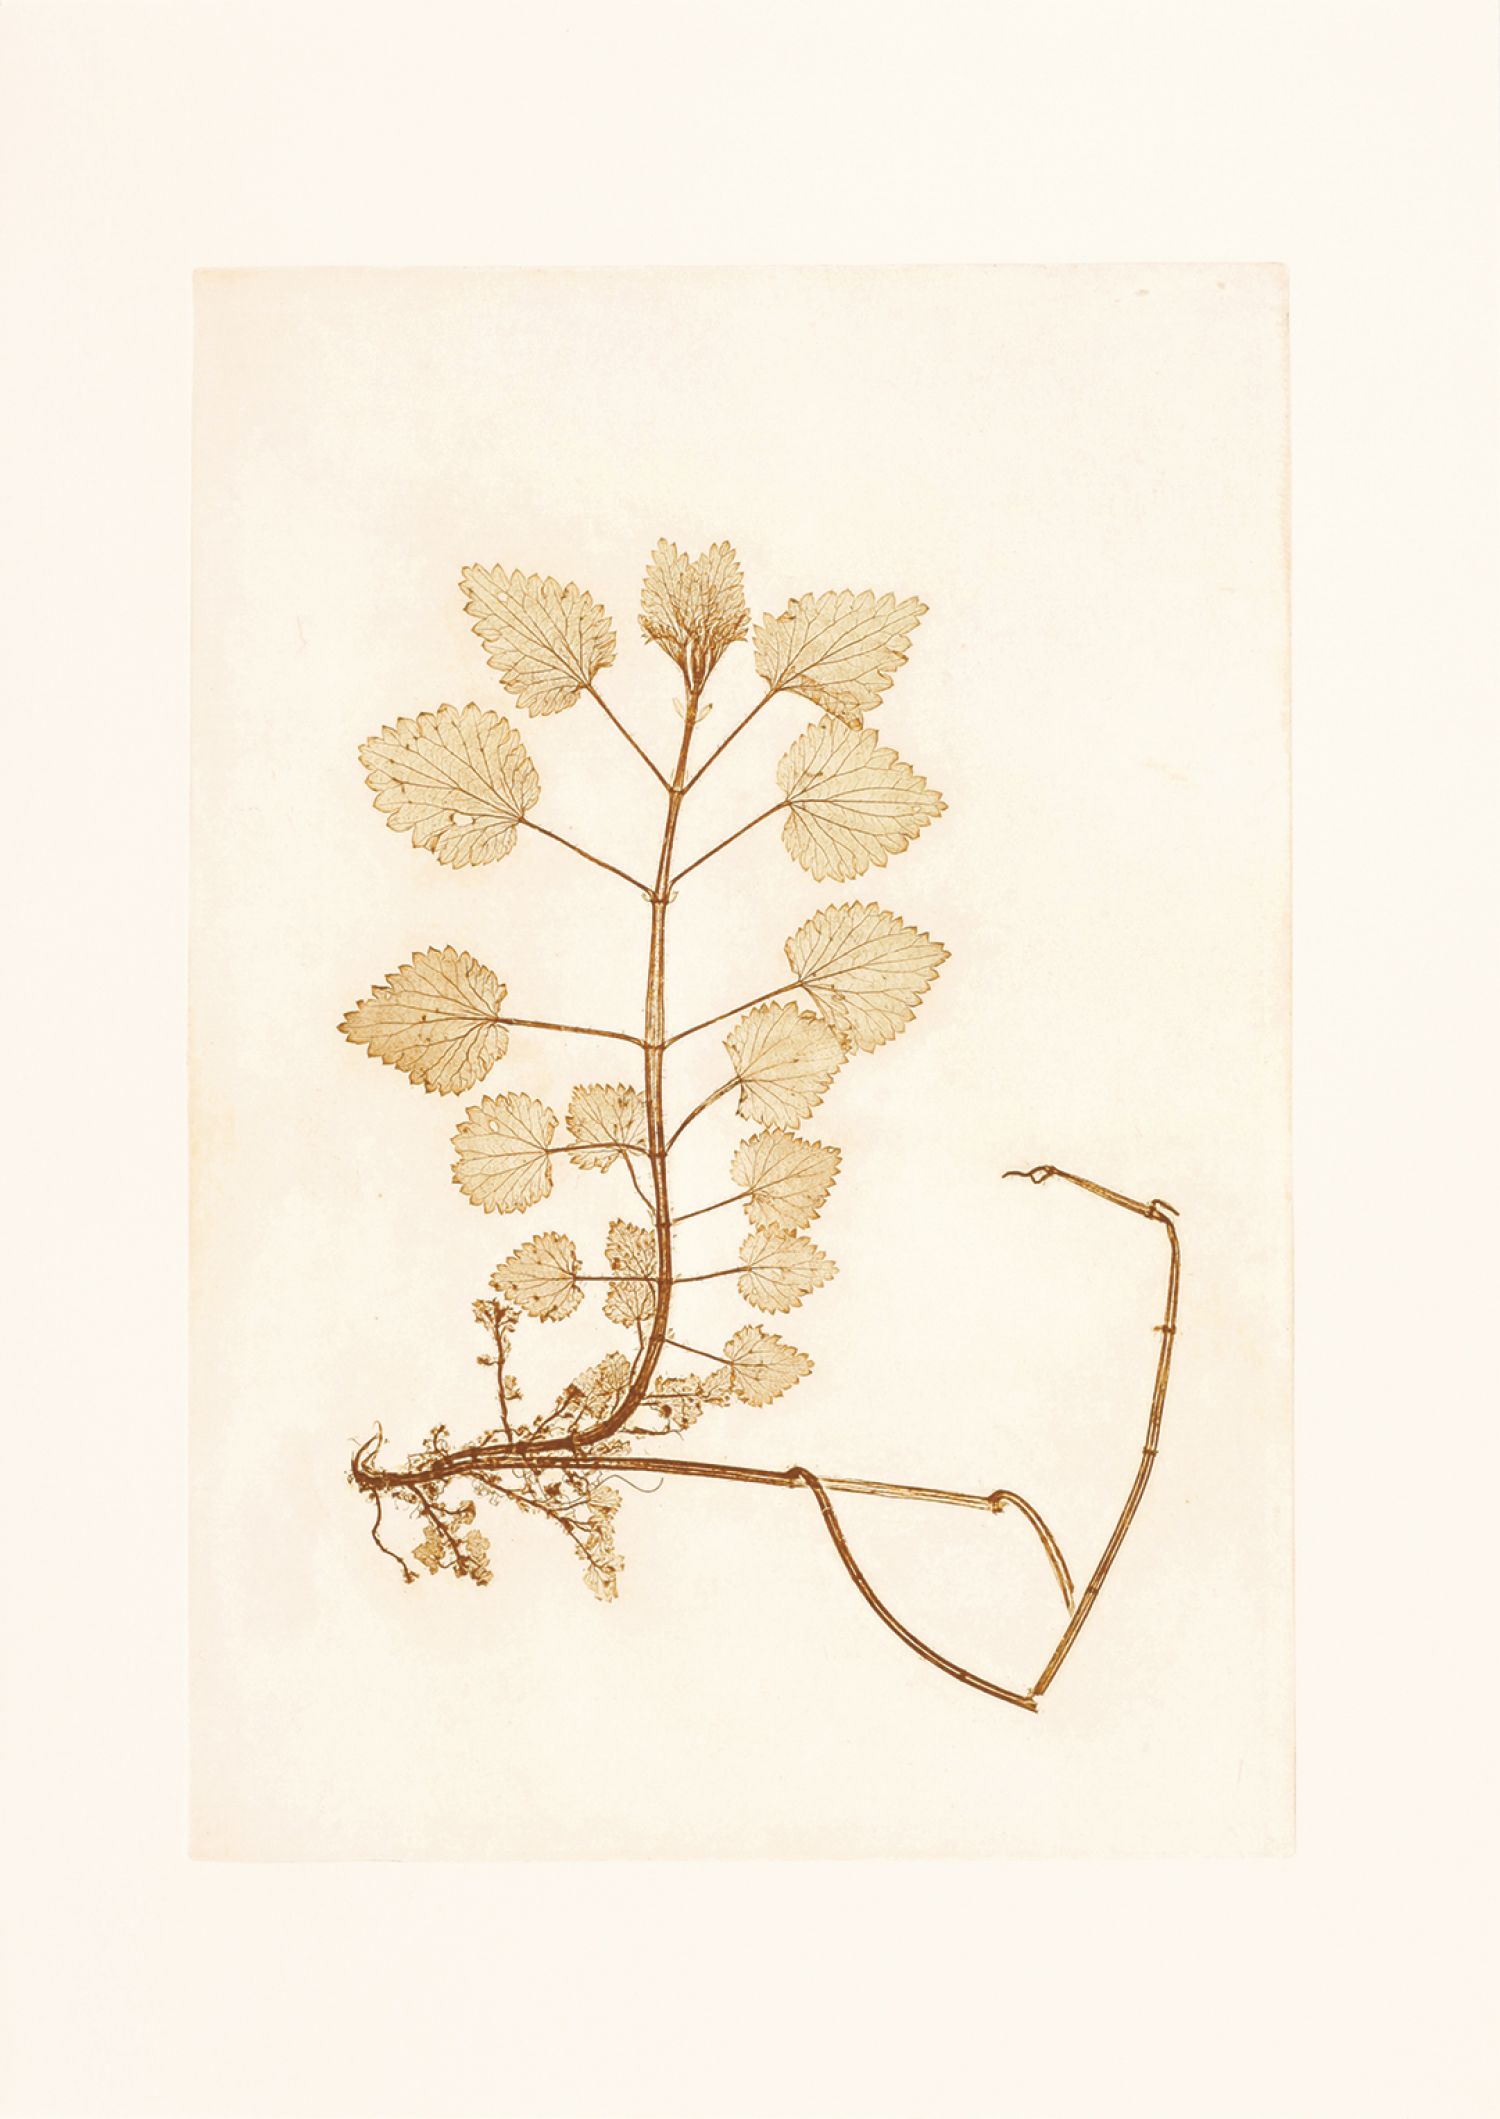 Família Urtiga («Urticaceae»), «Urtica dioica» (urtiga), 2017. Impressão natural, 60 x 43,5 cm